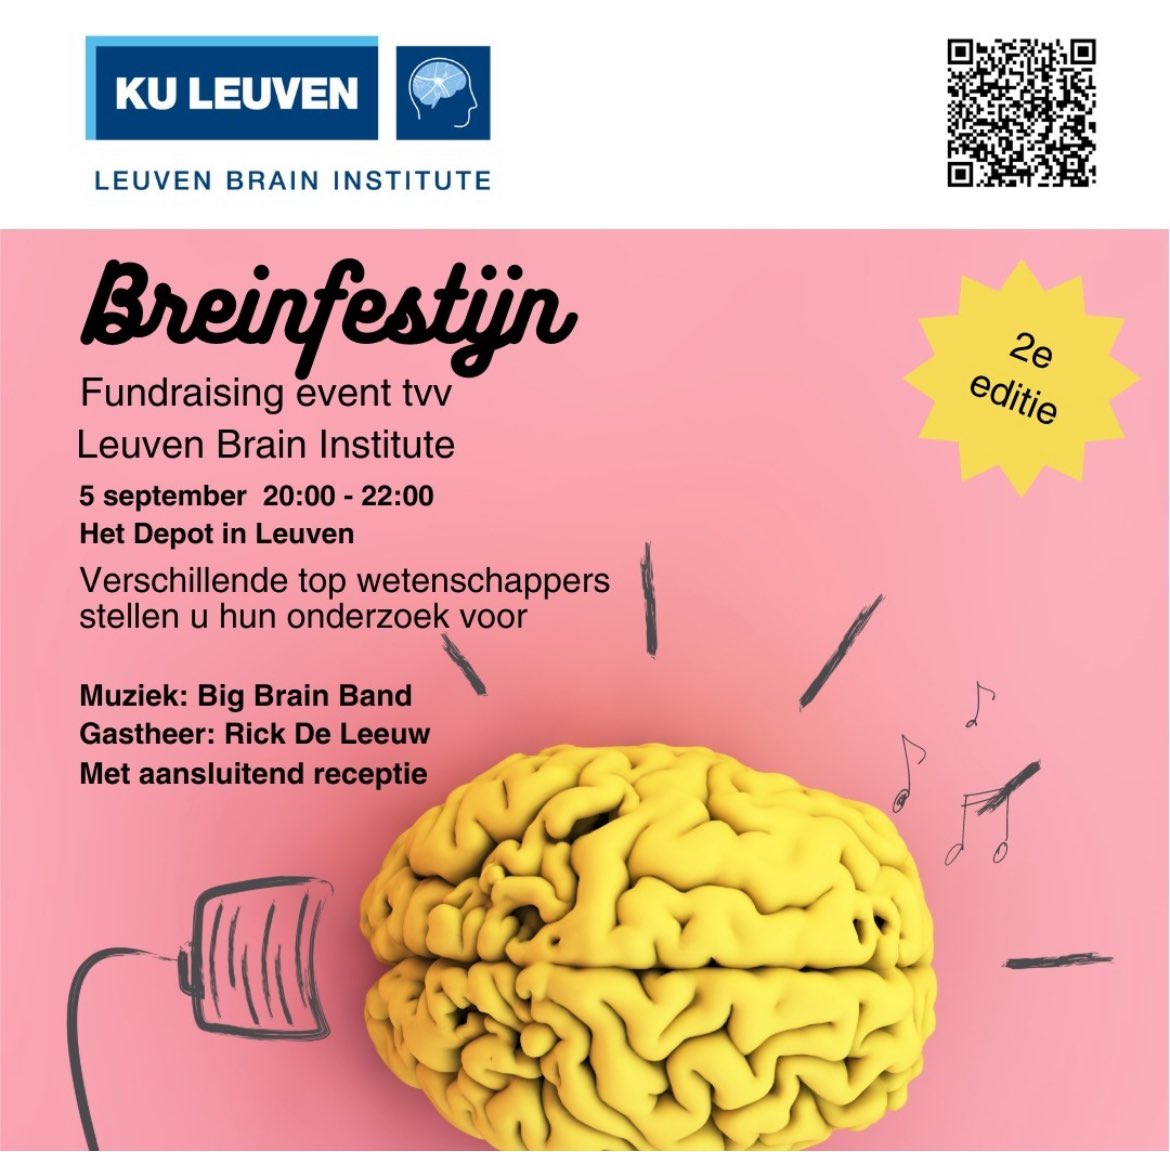 🎉Groot nieuws, #LeuvenBrainInstitute organiseert voor de 2e x #Breinfestijn - een #fundraiser tvv hersenonderzoek 🧠 📚Een selectie van top-wetenschappers stelt hun onderzoek voor en onze huisband, de Big Brain Band die bestaat uit musicerende vorsers, zorgt voor de muziek 🎶